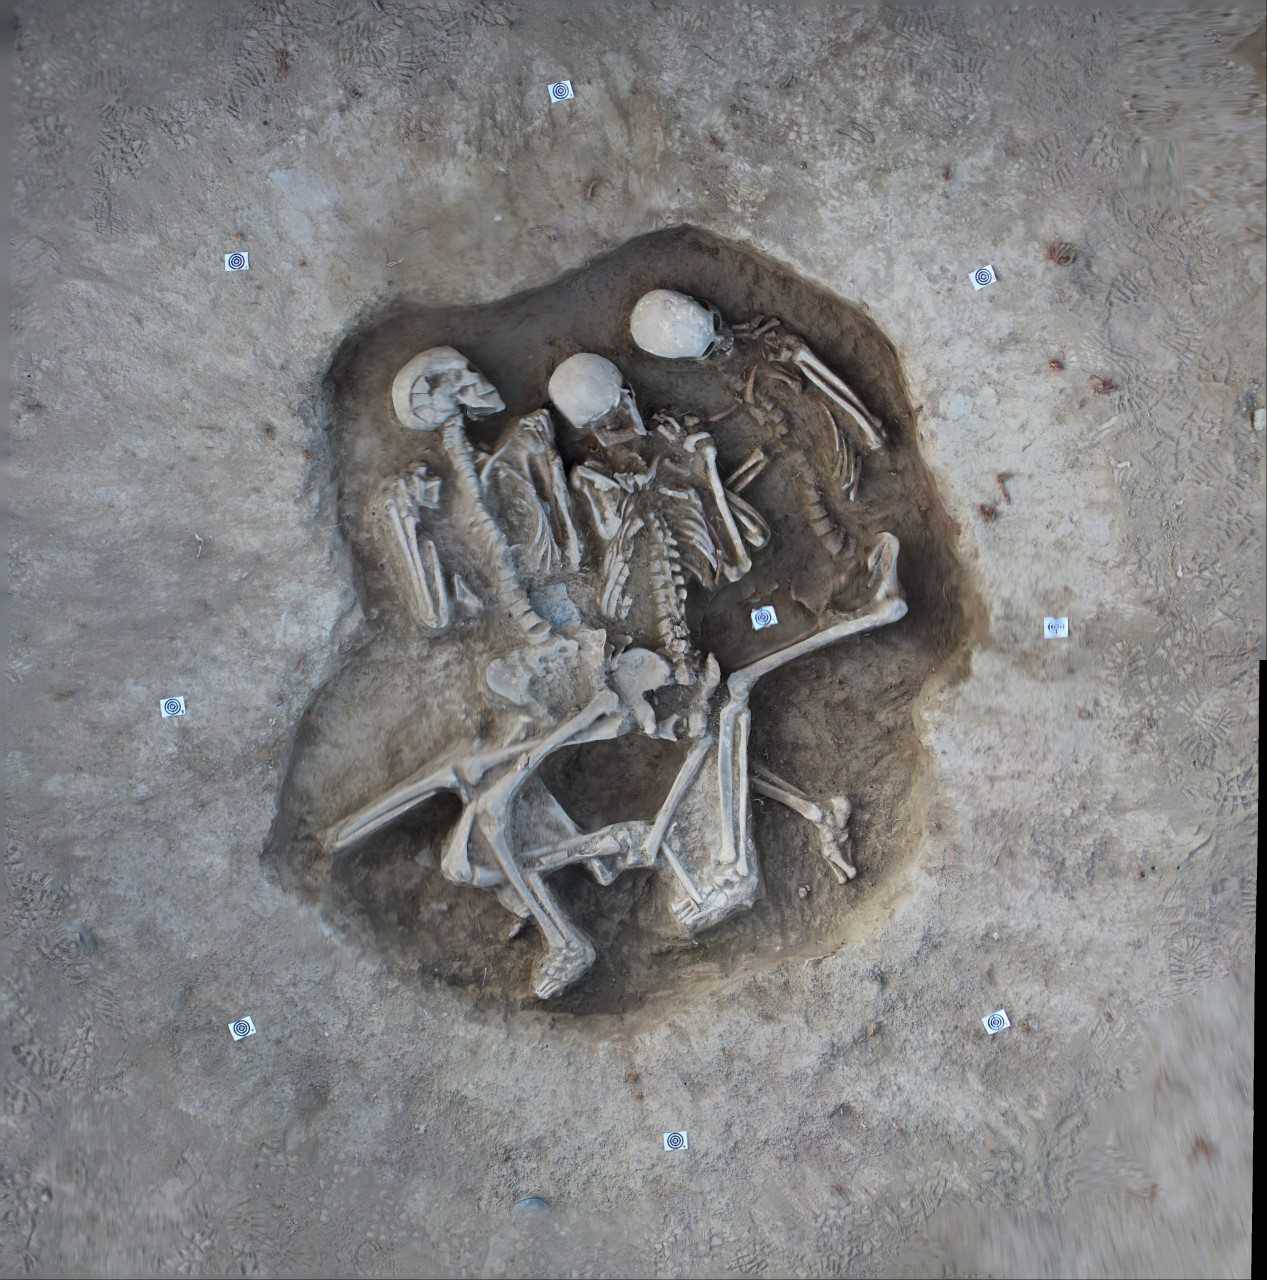 U Slavoniji pronašli grob s tri kostura star oko 5000 godina